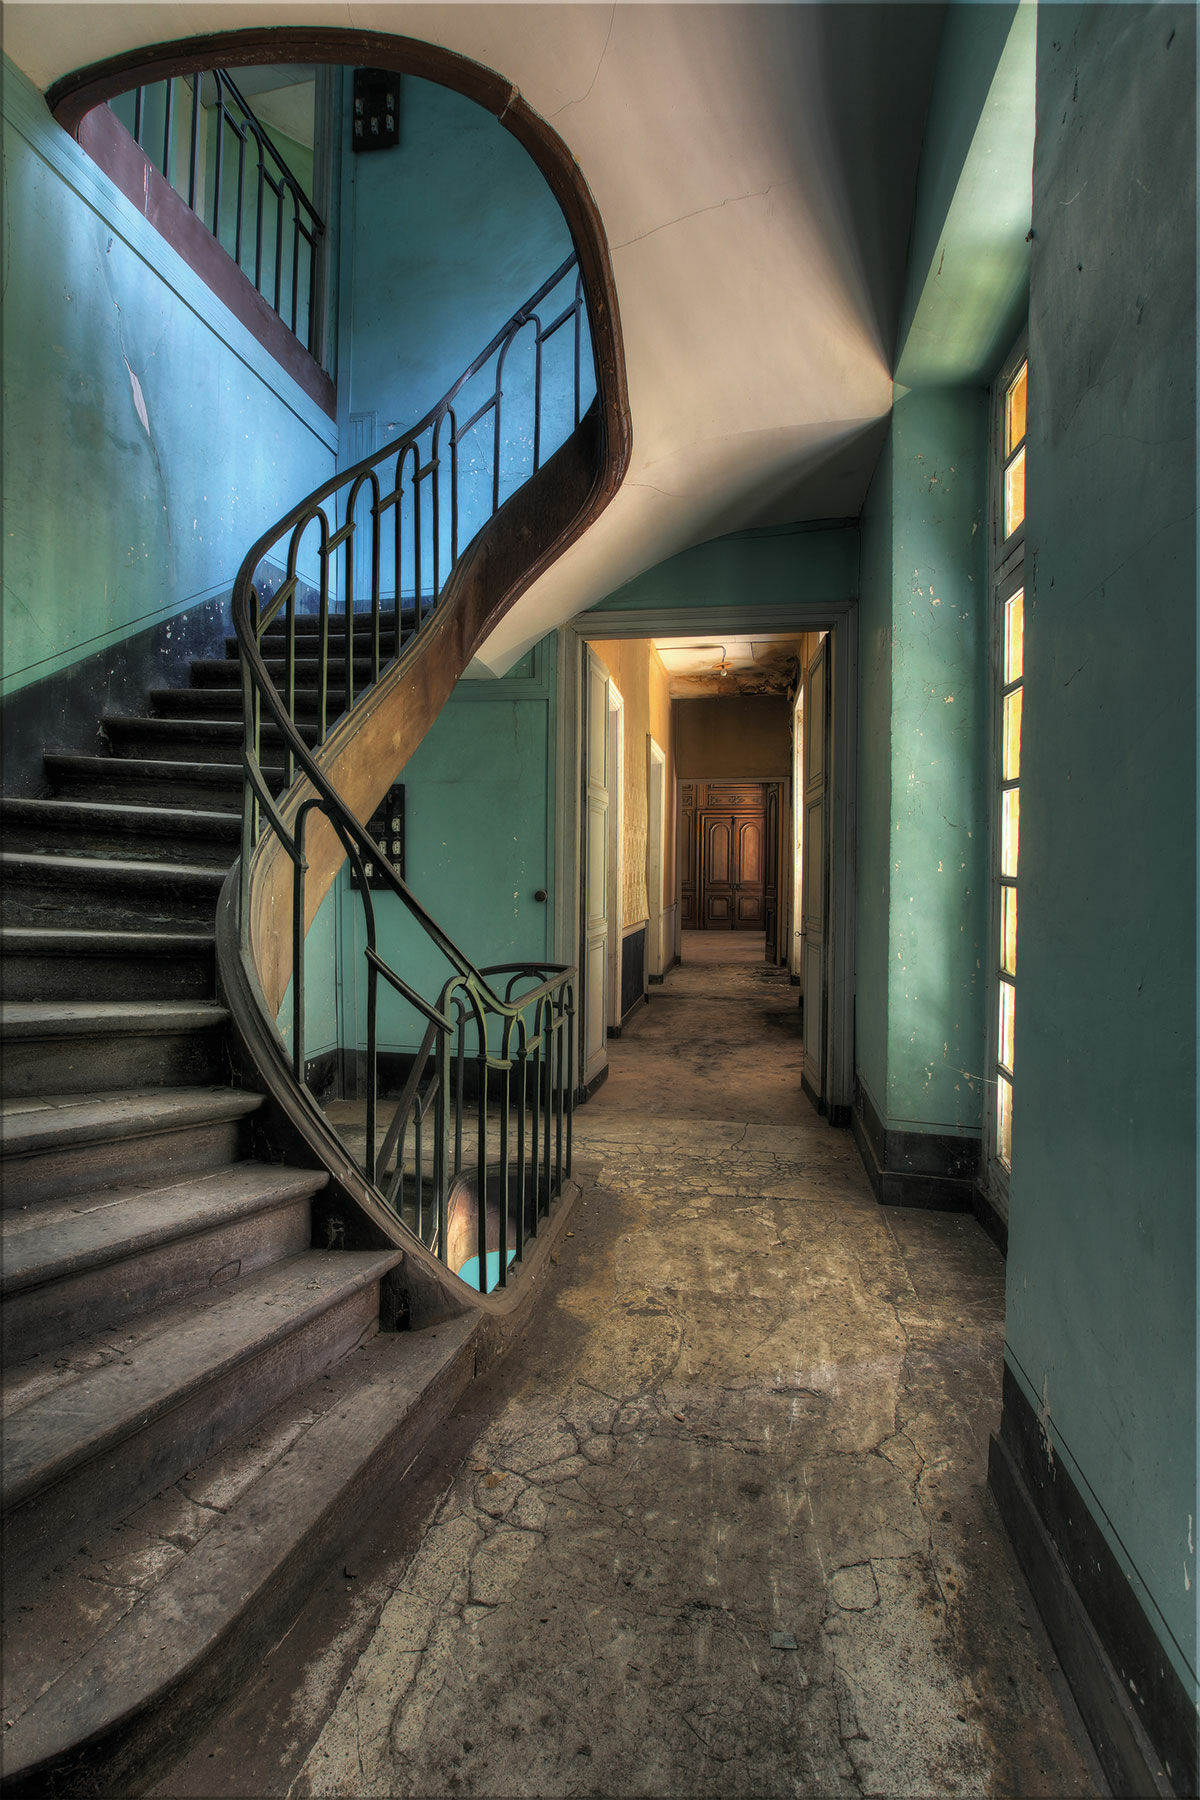 Tableau "Escaliers usagés" von Olivier Lacour